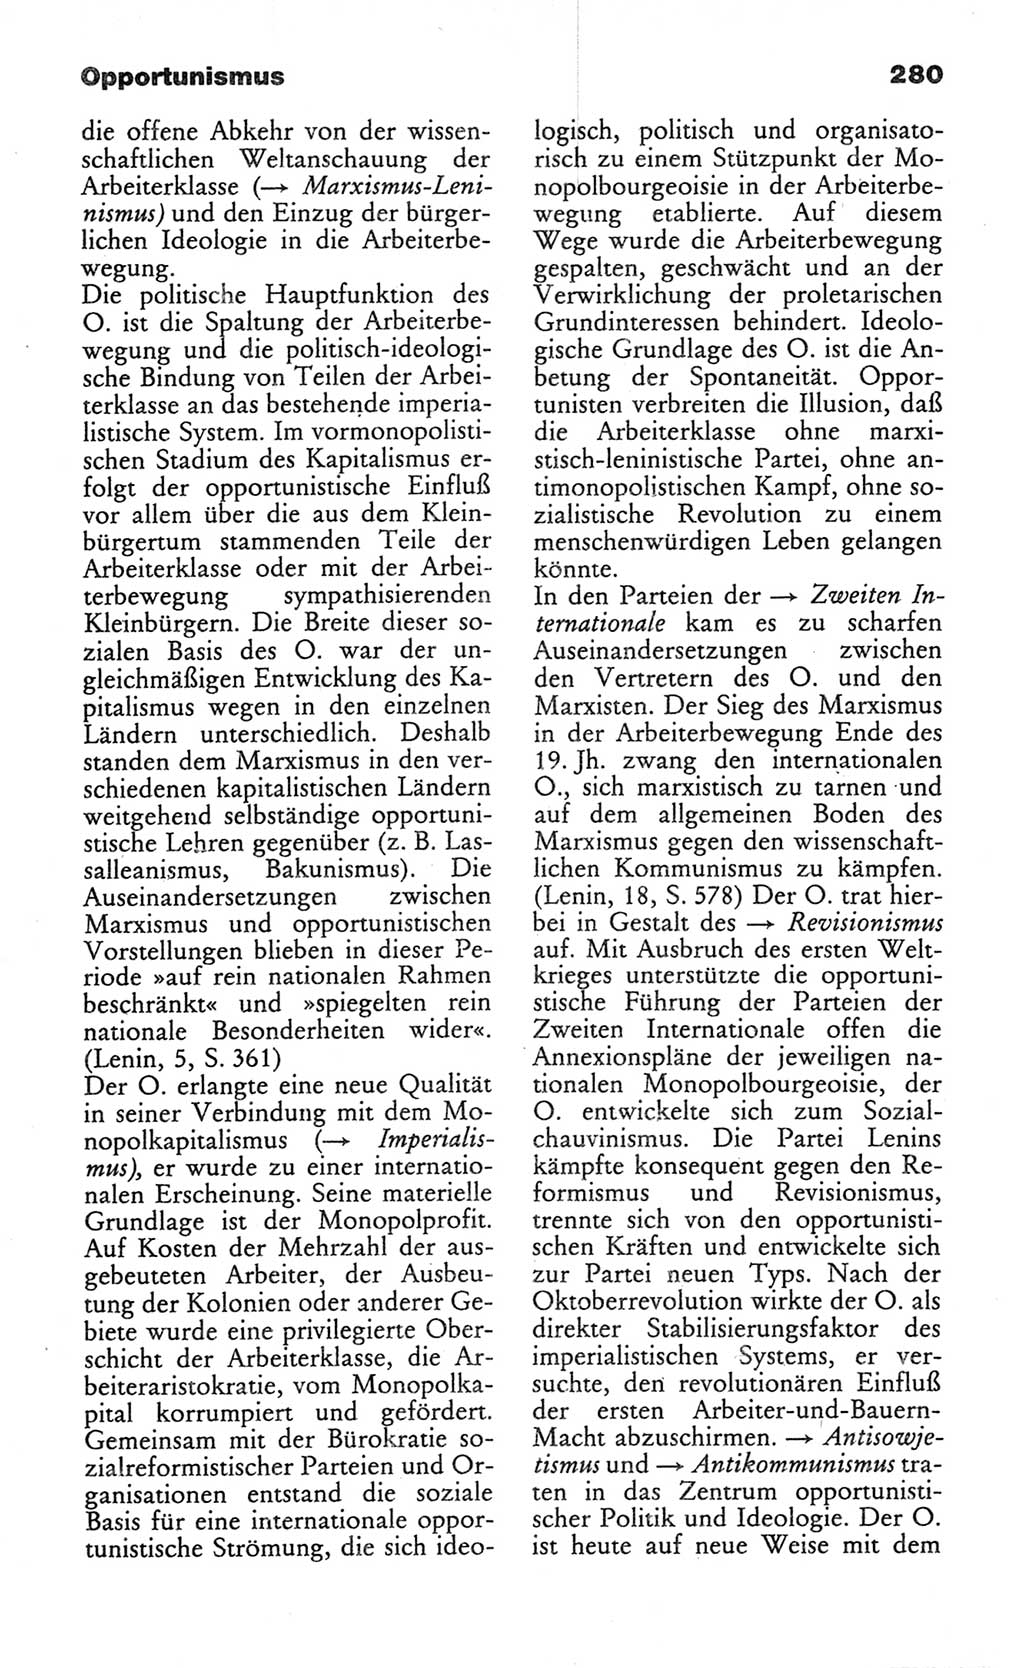 Wörterbuch des wissenschaftlichen Kommunismus [Deutsche Demokratische Republik (DDR)] 1982, Seite 280 (Wb. wiss. Komm. DDR 1982, S. 280)